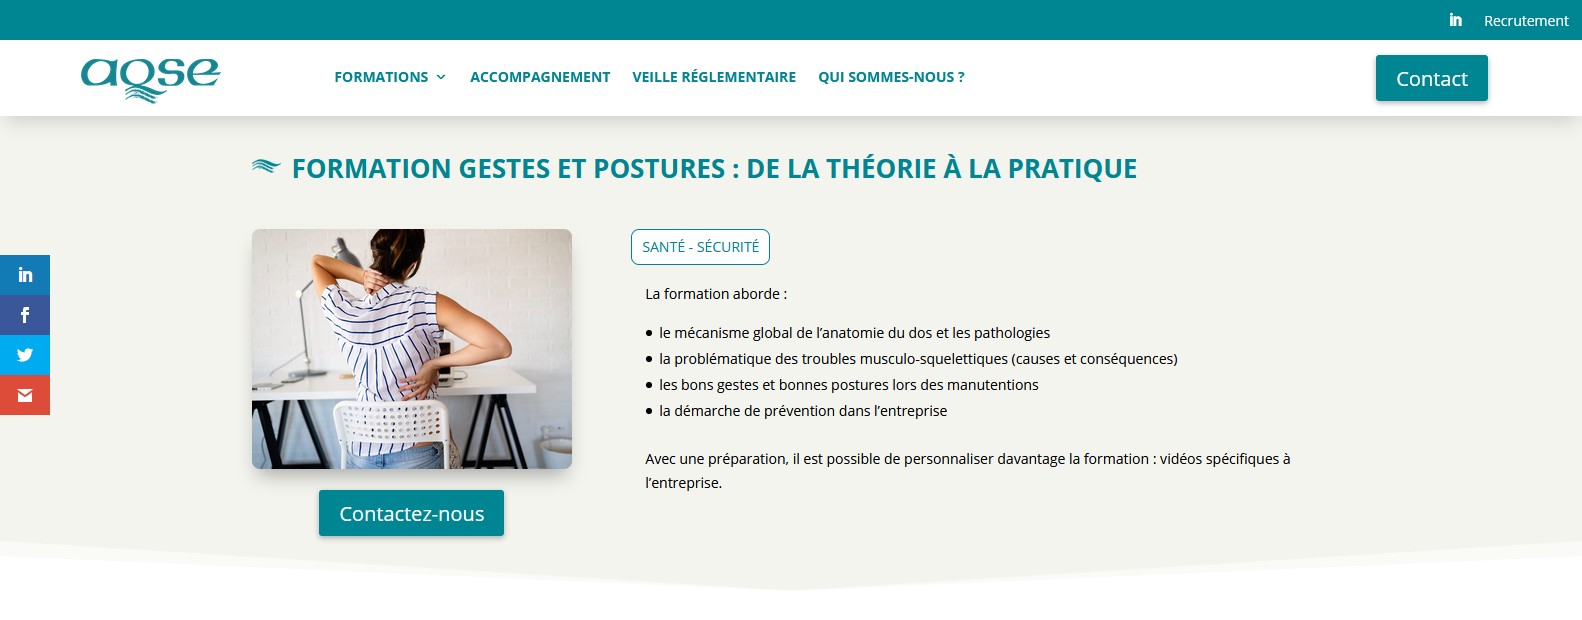 aqse-france.fr Formation gestes et postures sensibilisation manutention manuelle TMS